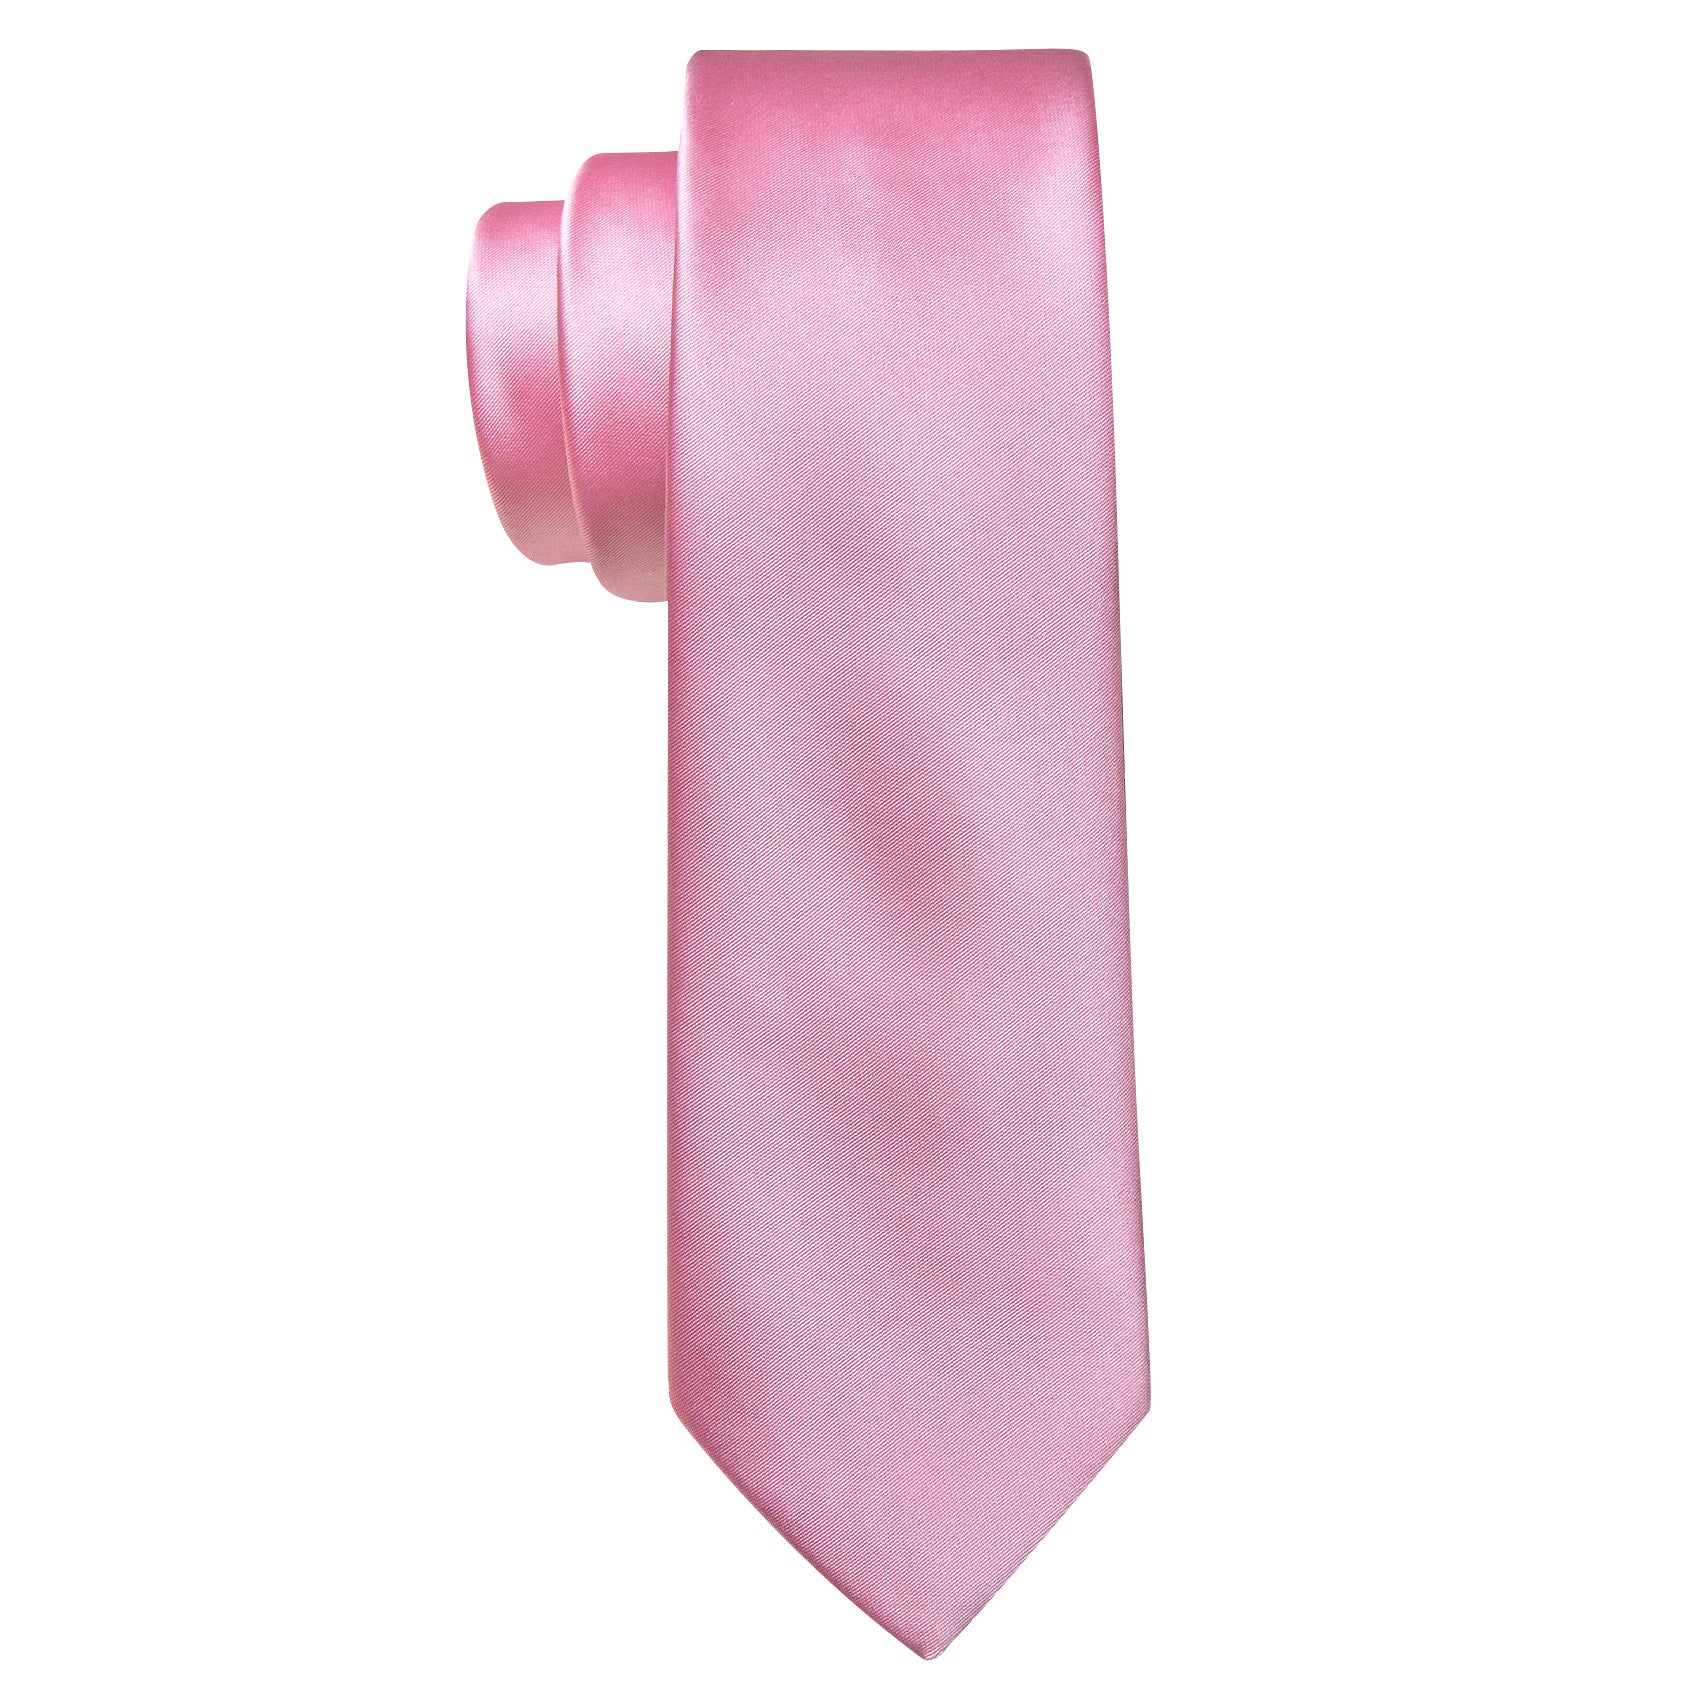 Pink Solid Tie Pocket Square Set For Kids